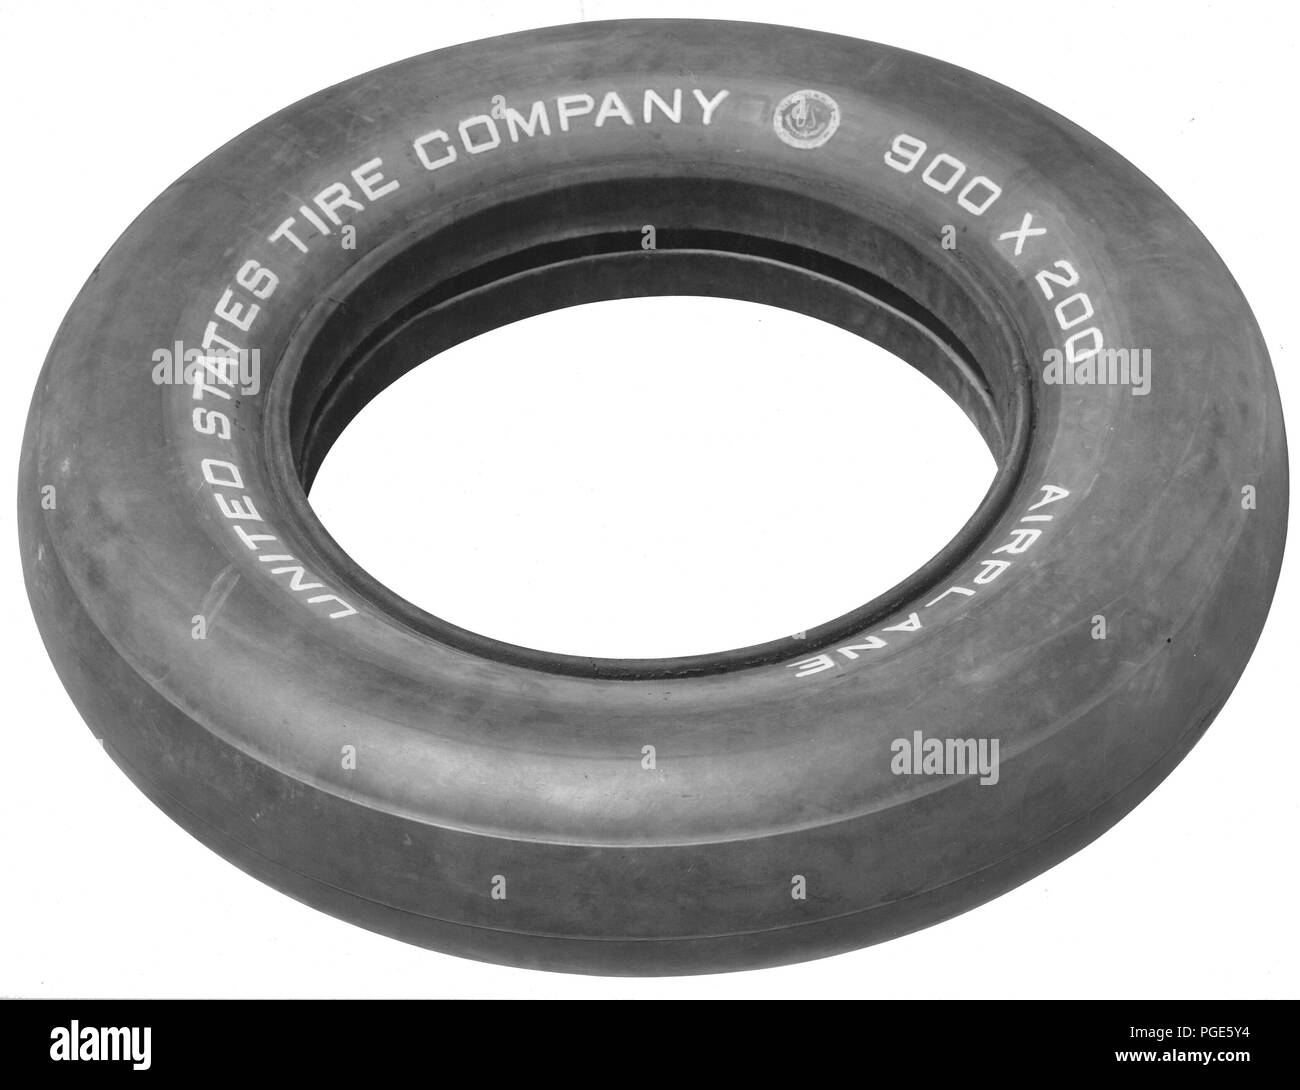 Reifen hergestellt für die Regierung. Flugzeug reifen. Dieser Reifen wurde  für den Einsatz auf dem Handley-Page Bomber entwickelt. Us-Reifen Co., NEW  YORK, von U.S. Tire Co Stockfotografie - Alamy